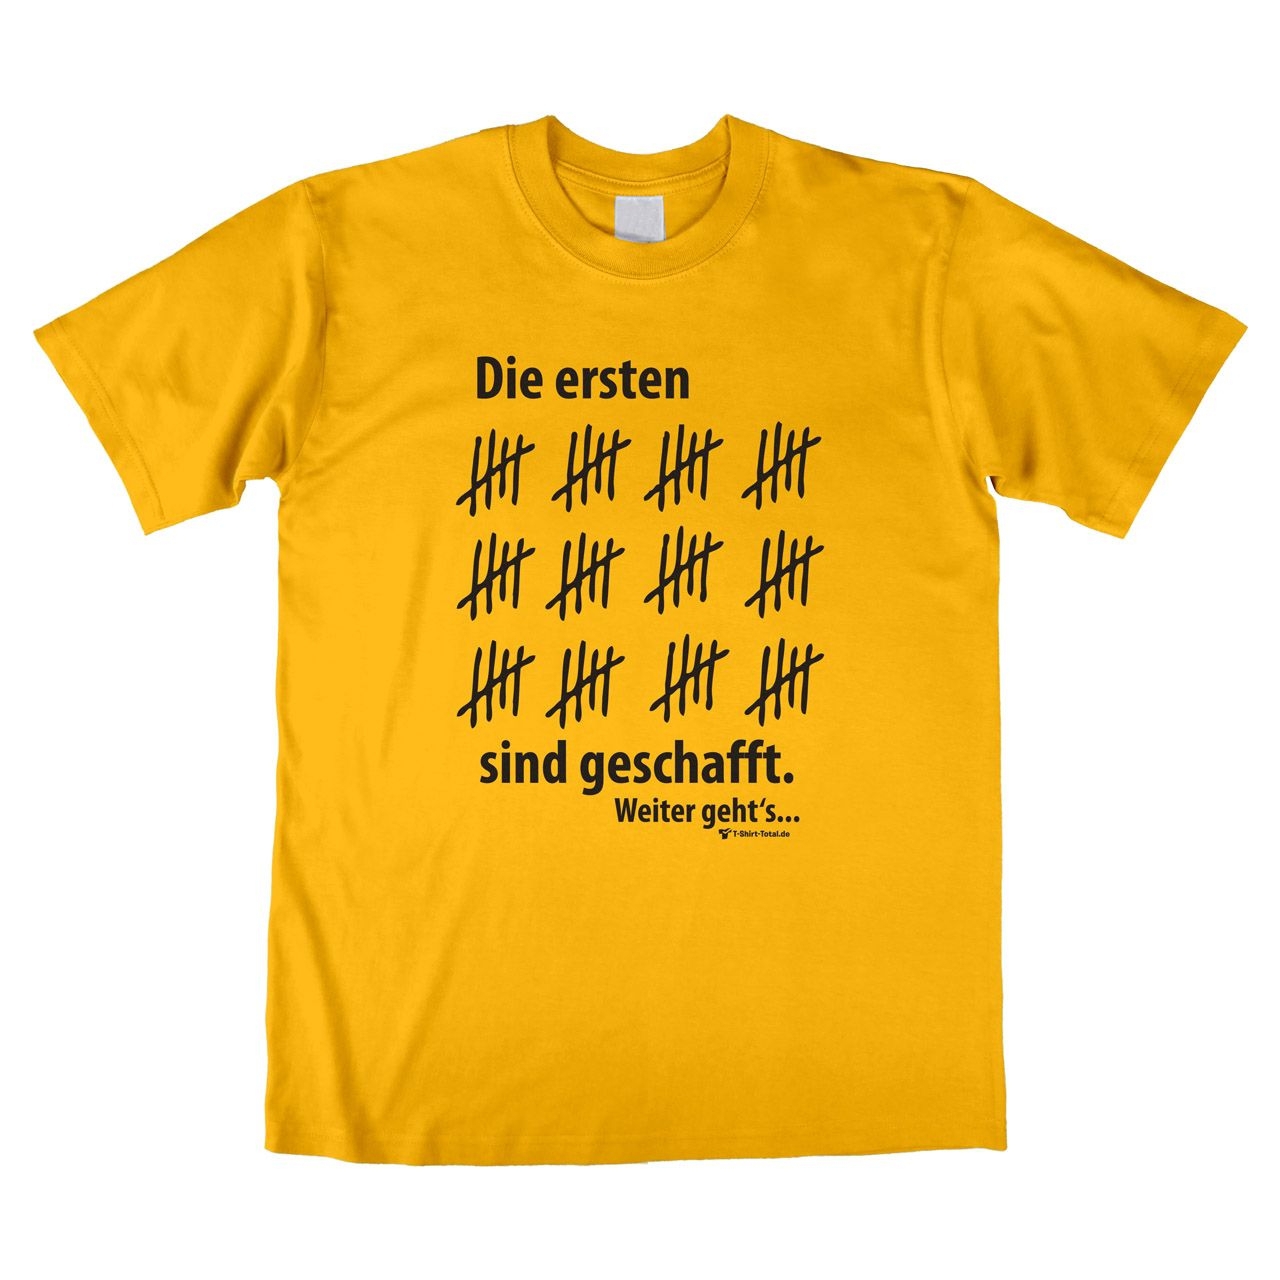 Ersten 60 geschafft Unisex T-Shirt gelb 2-Extra Large